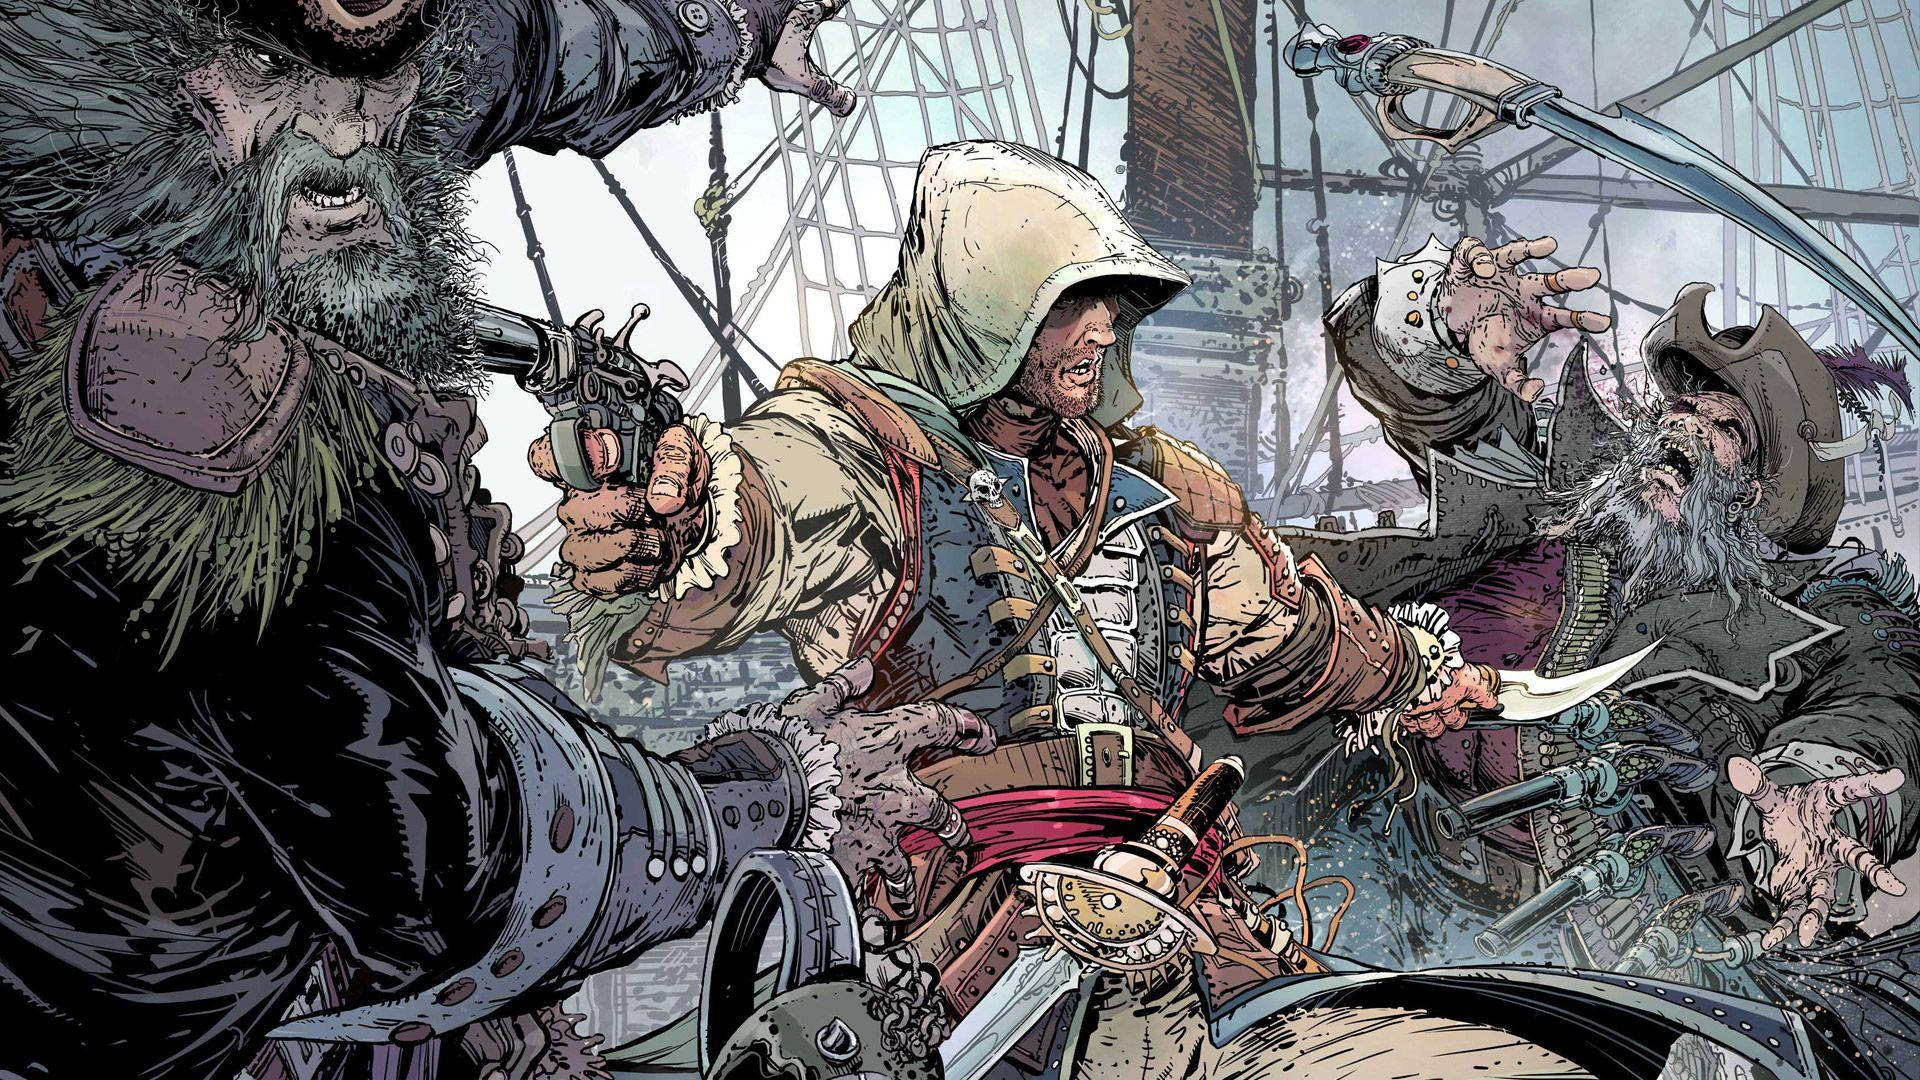 Assassin's Creed Black Flag Comic Scene Wallpaper